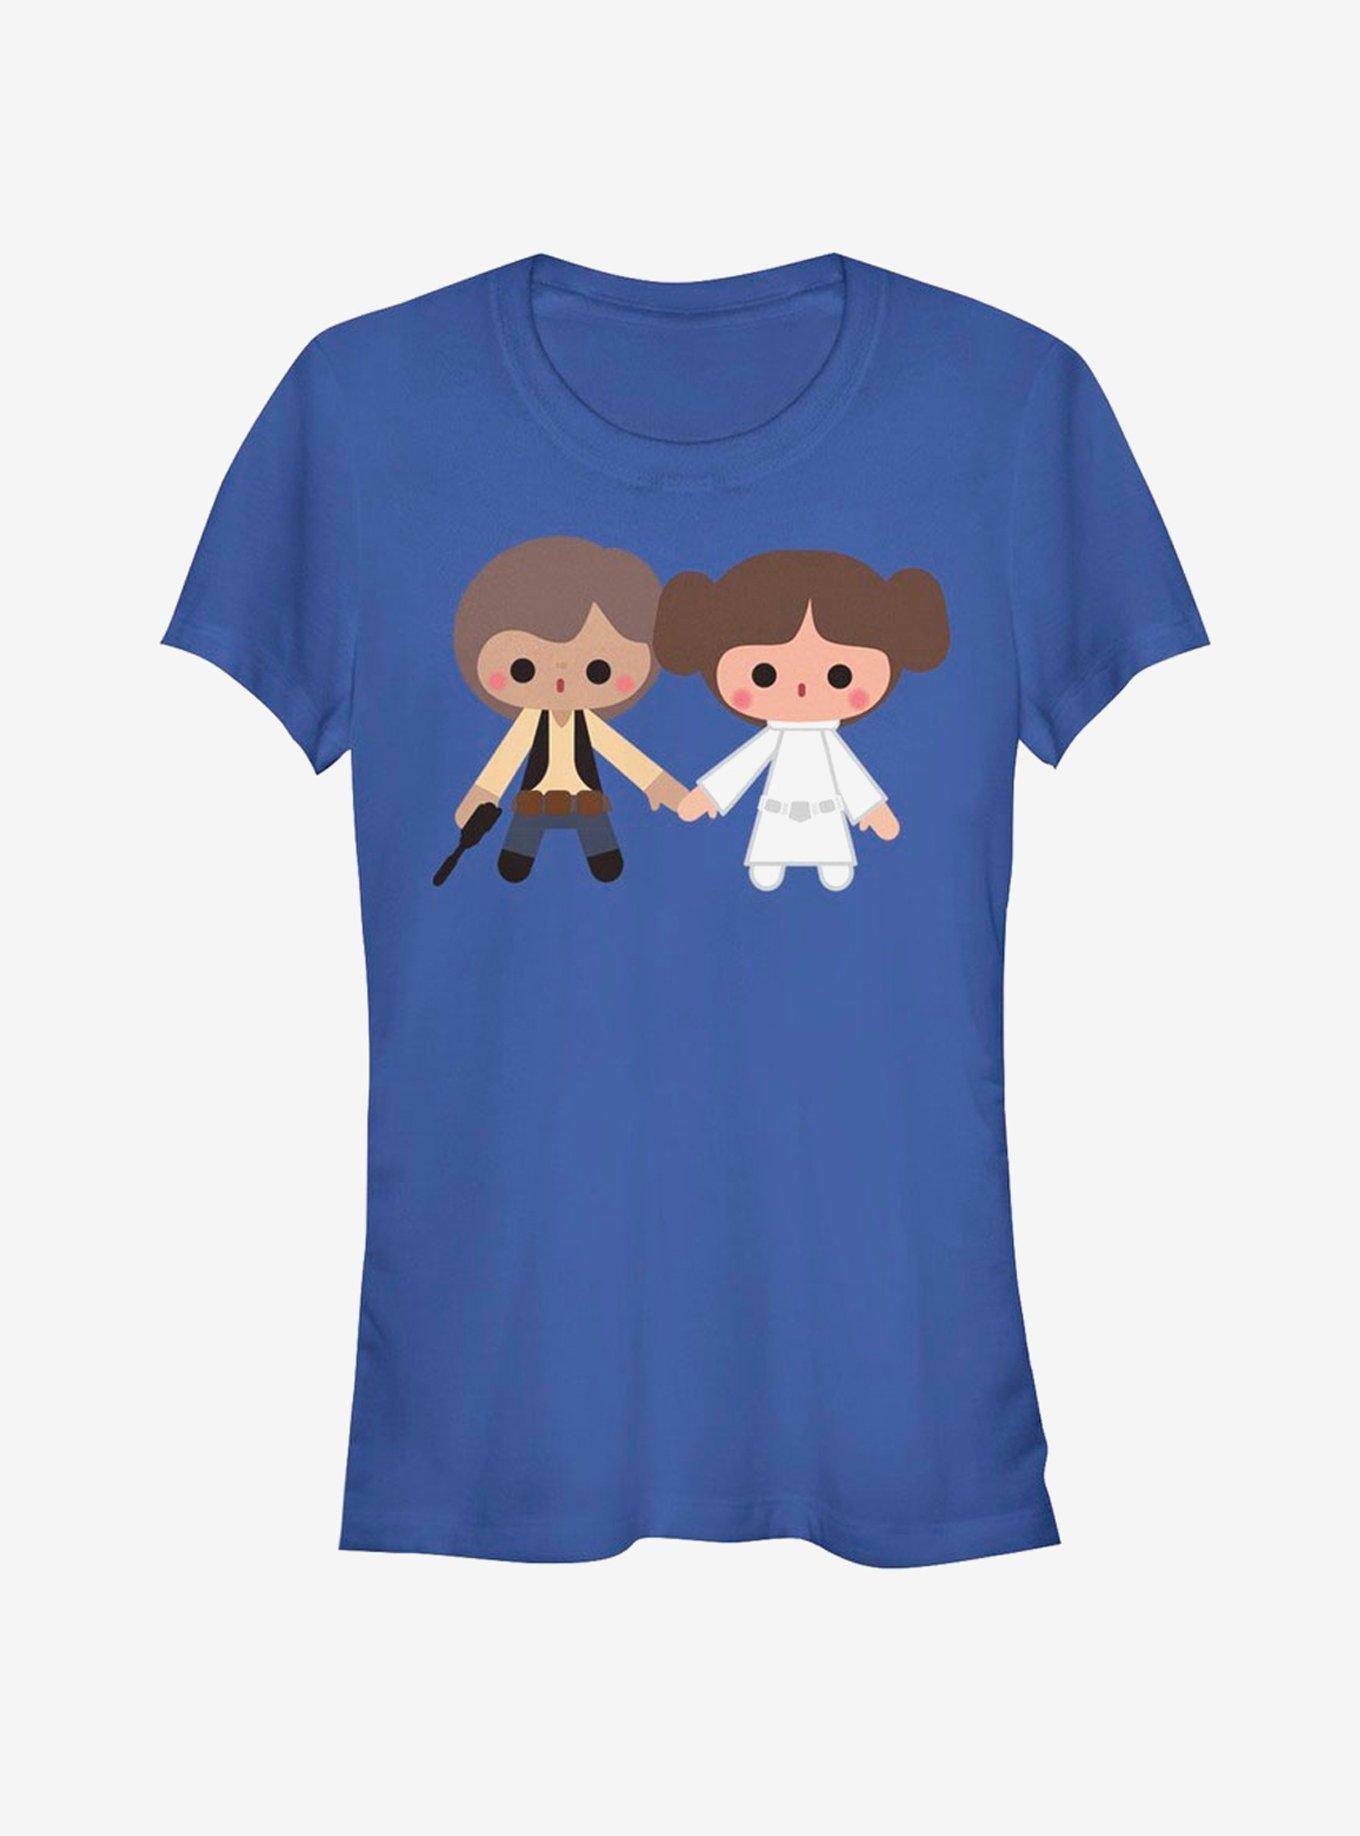 Star Wars Cute Cartoon Han Leia Love Girls T-Shirt